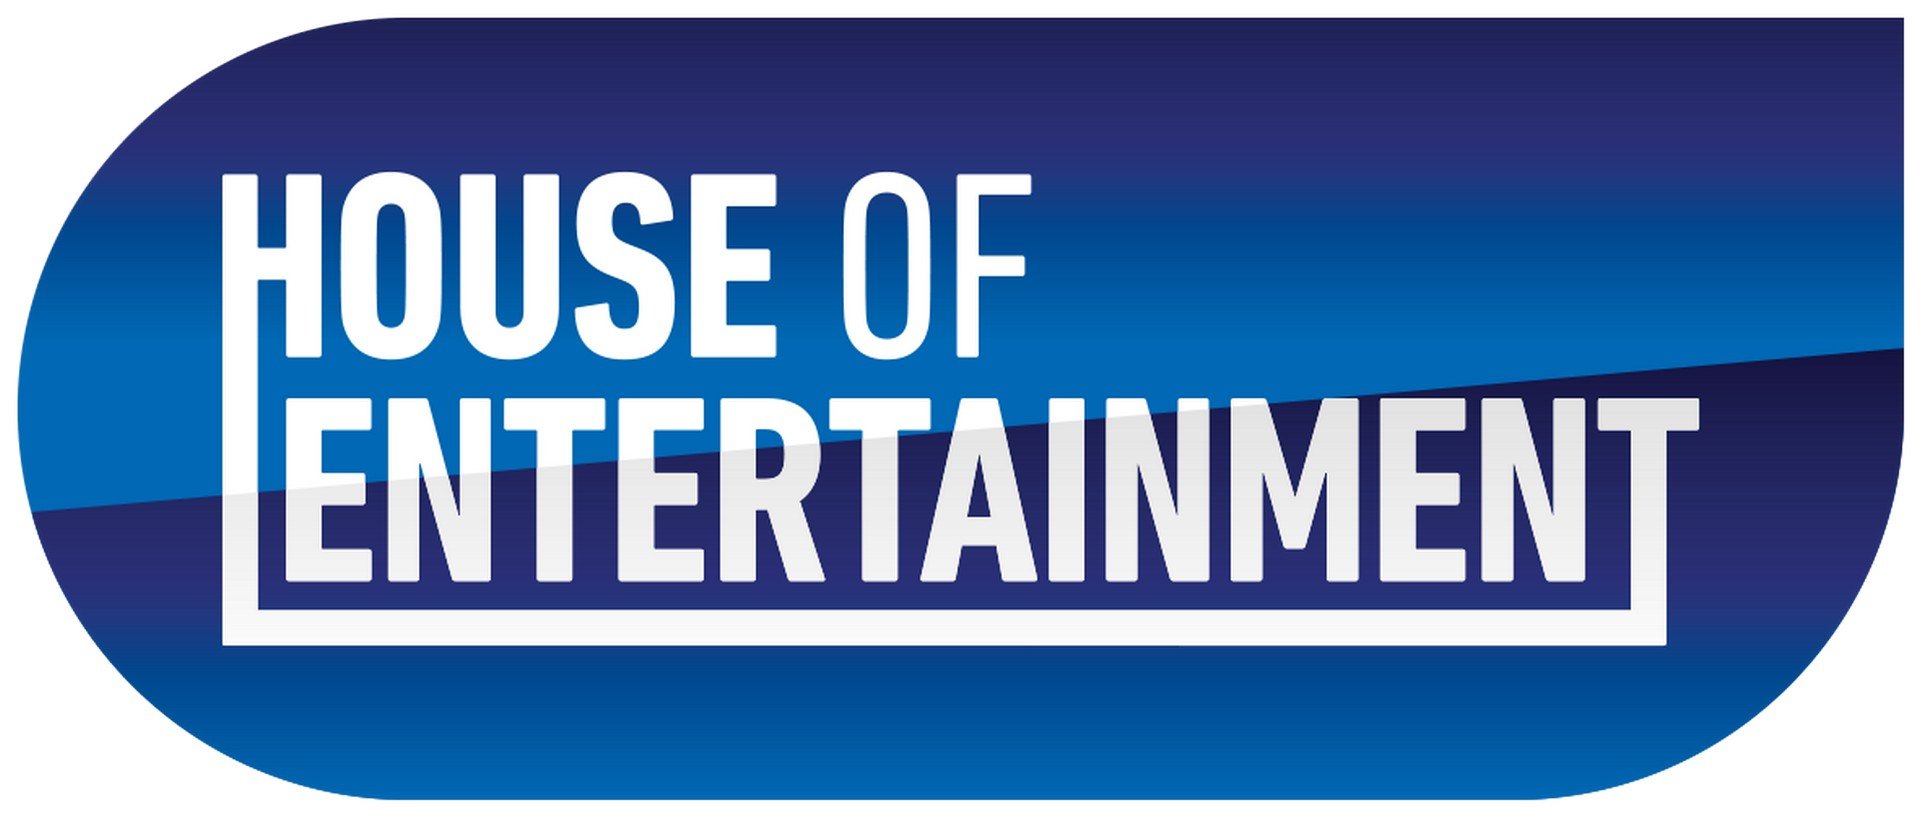 Tienercast swingende popmusical '13' klaar voor extra speelronde! - Logo House Of Entertainment